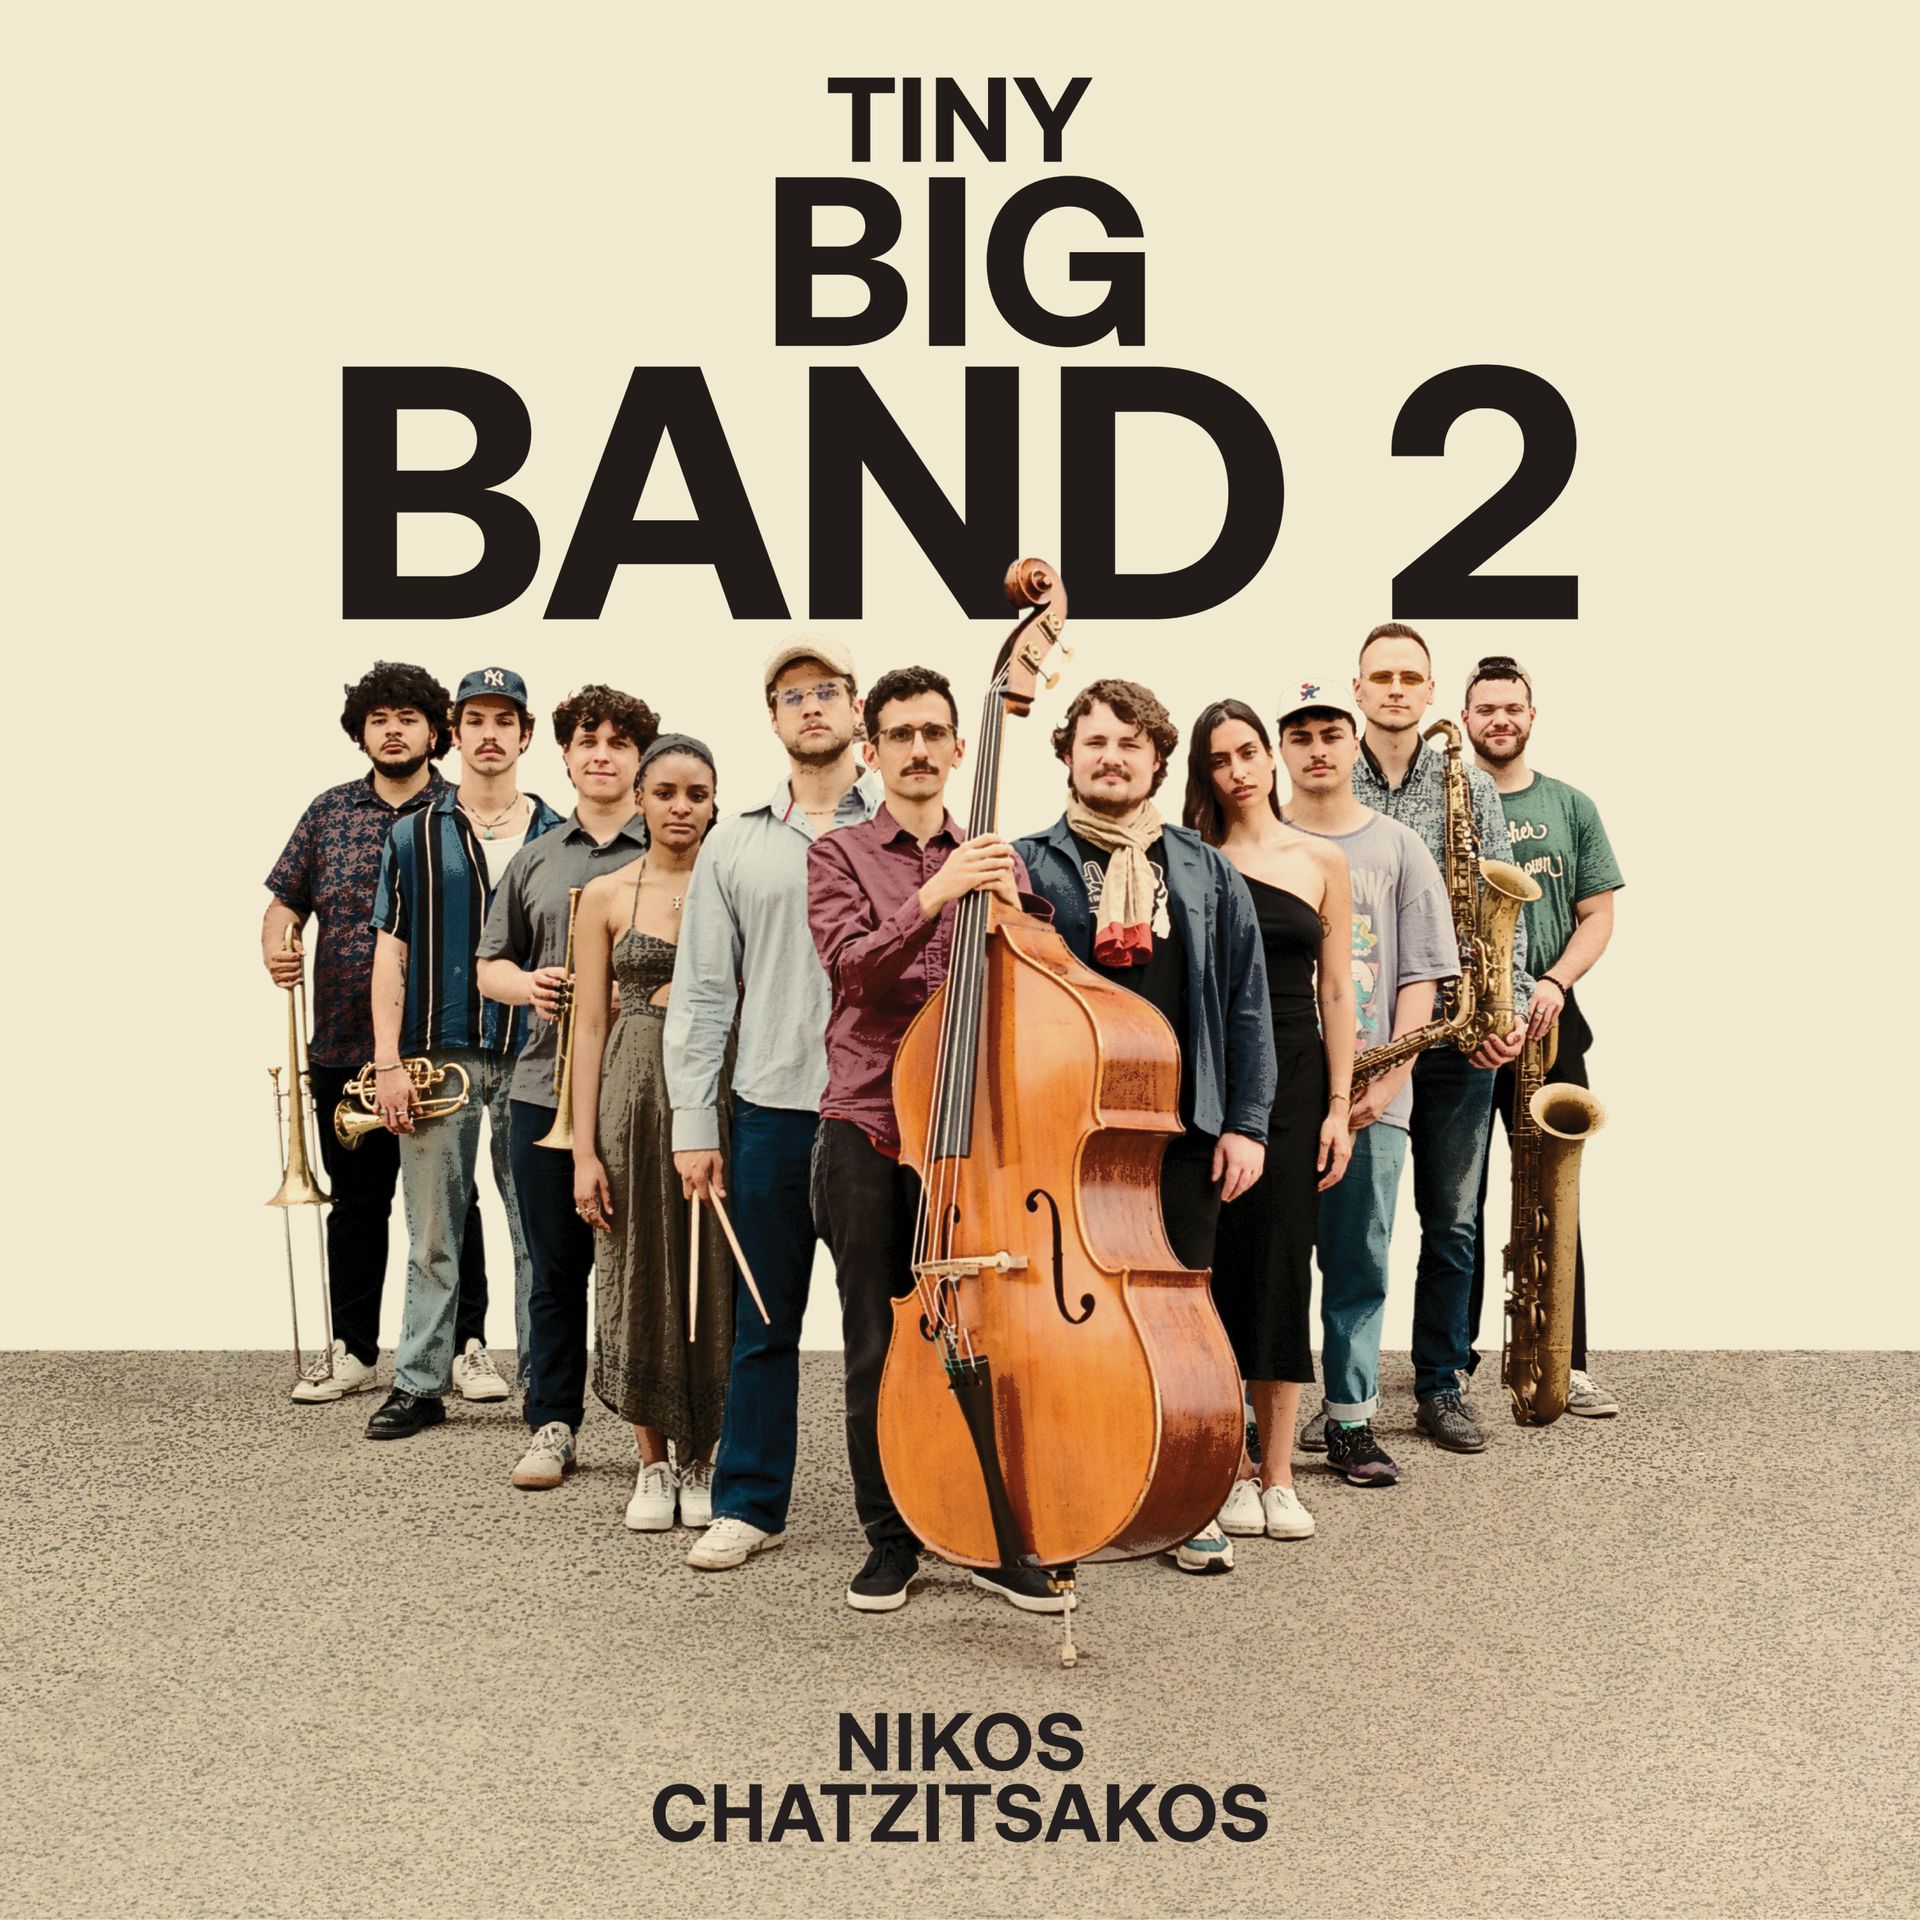 tiny big band 2 by nikos chatzisakos